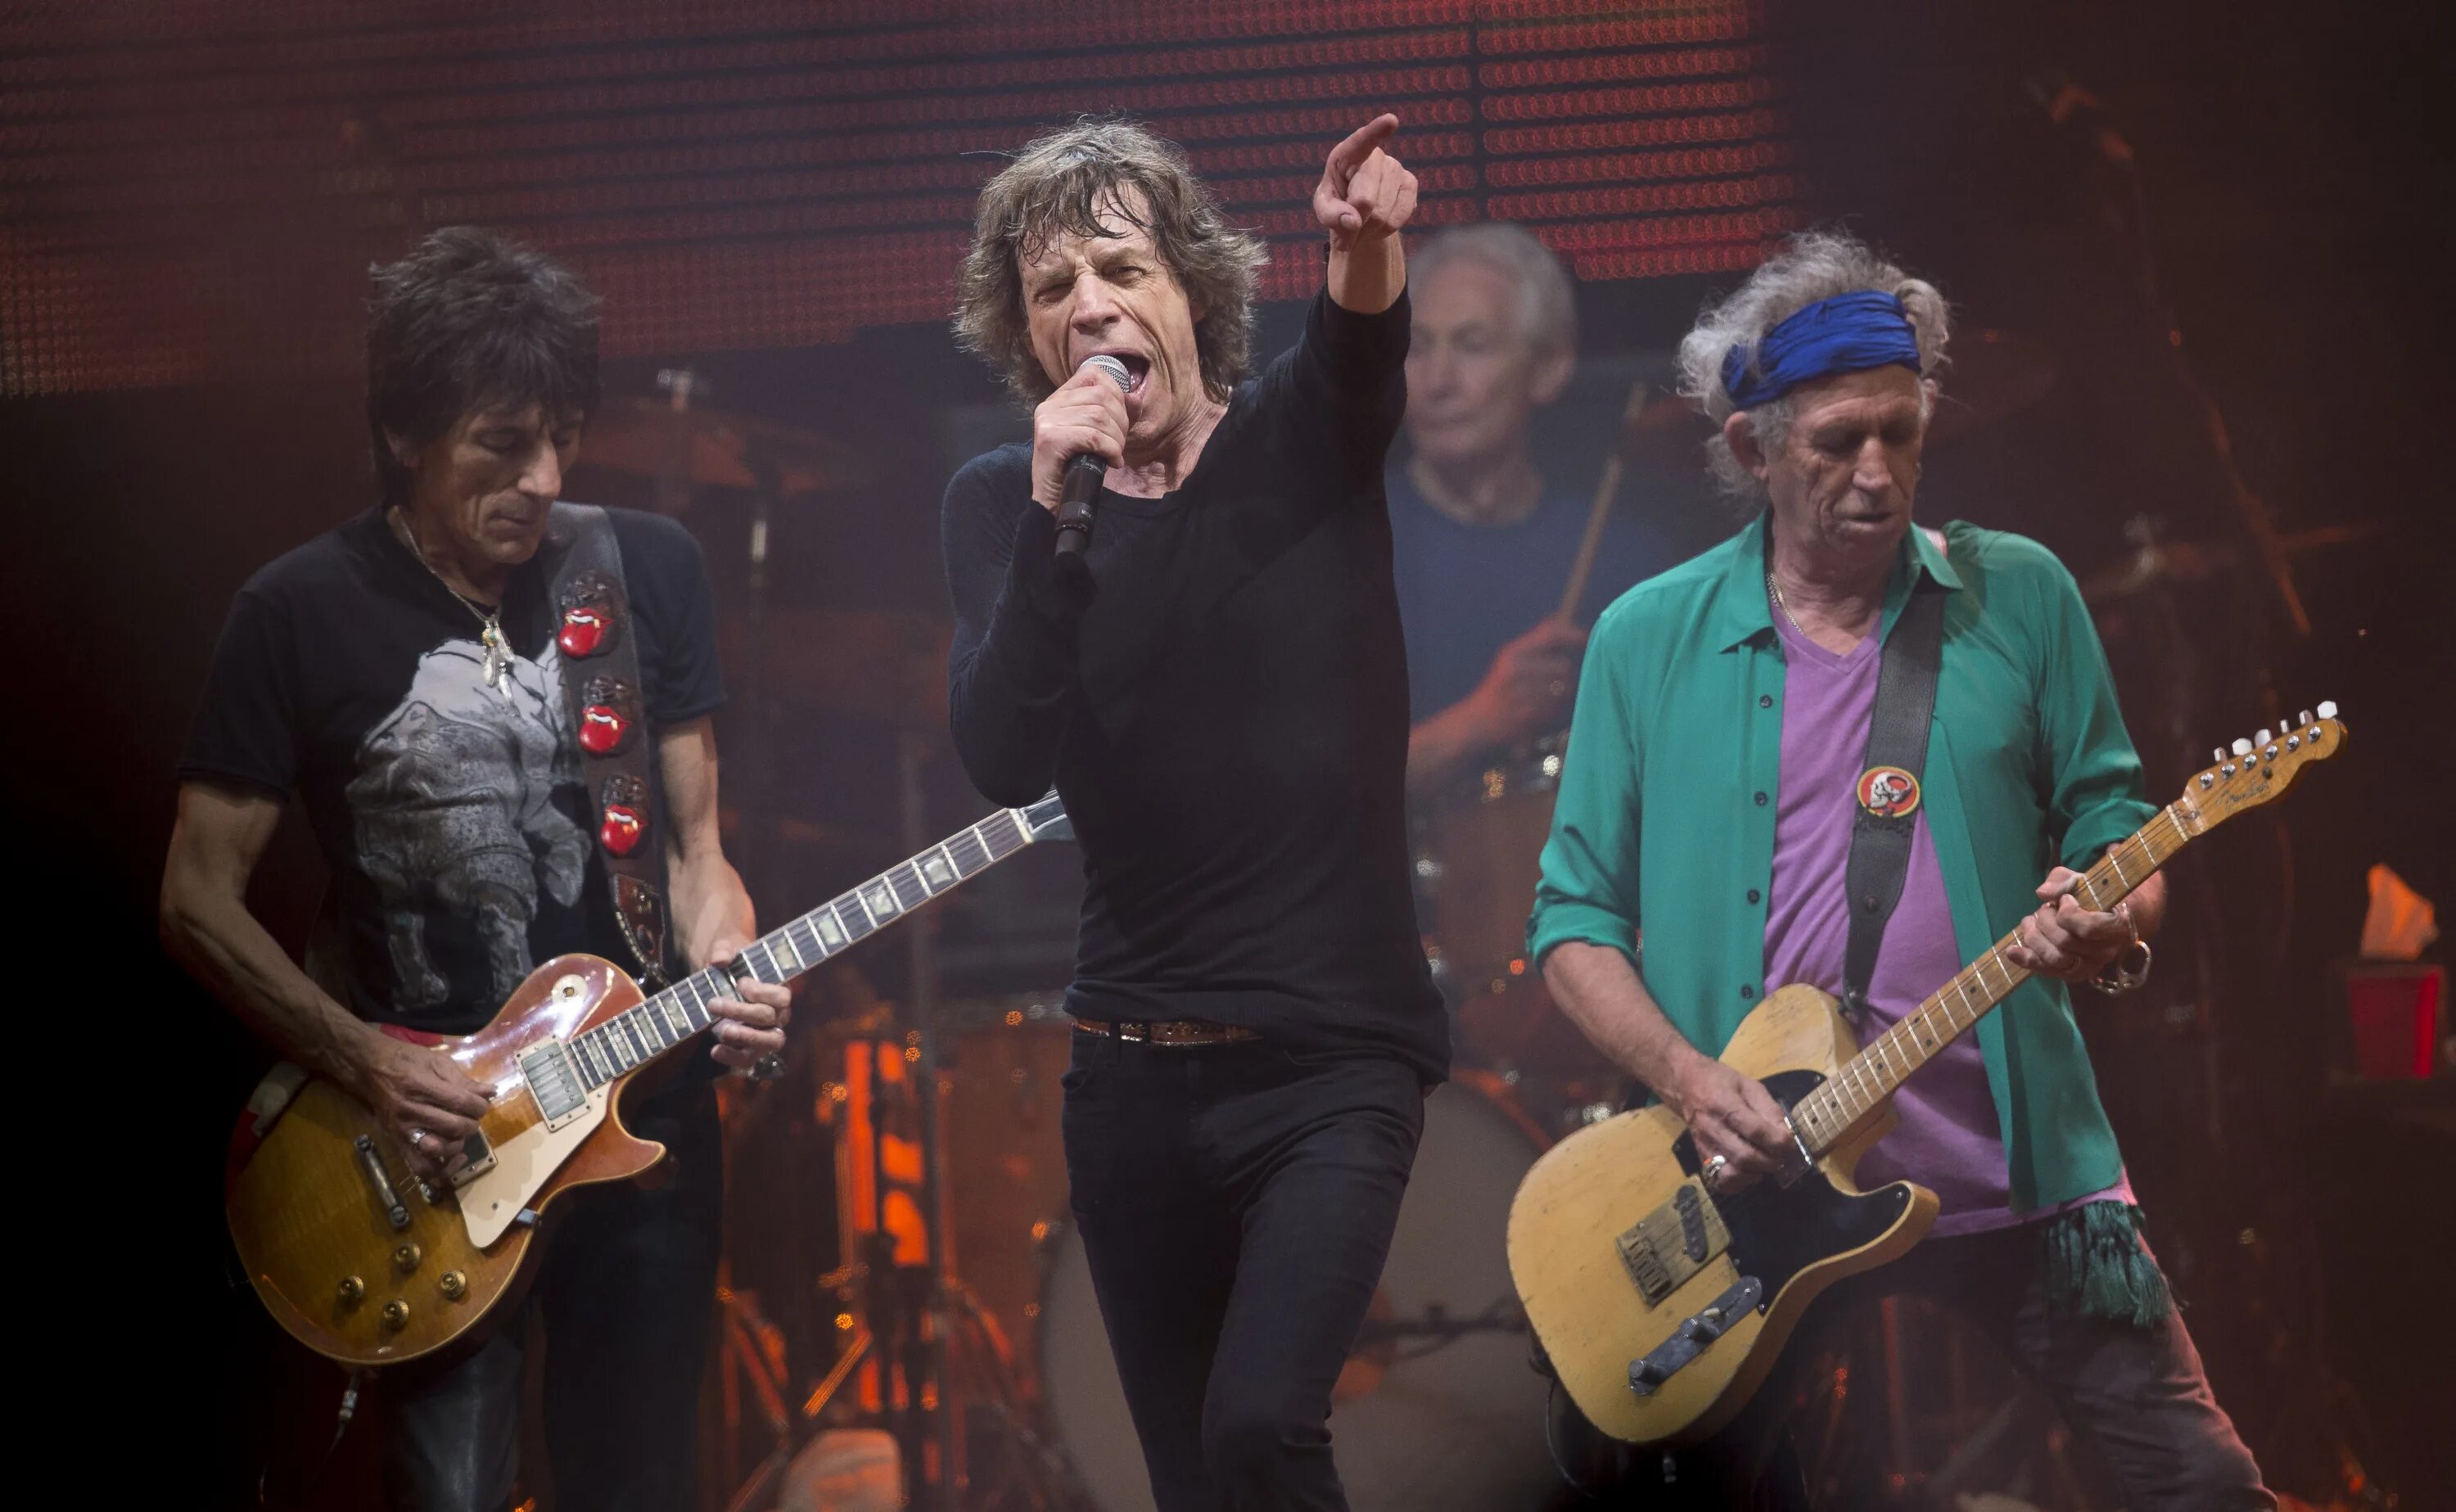 Стоун рок. Группа the Rolling Stones. Рок группа Роллинг стоунз. Роллинг стоунз в молодости. Роллинг стоунз на сцене.